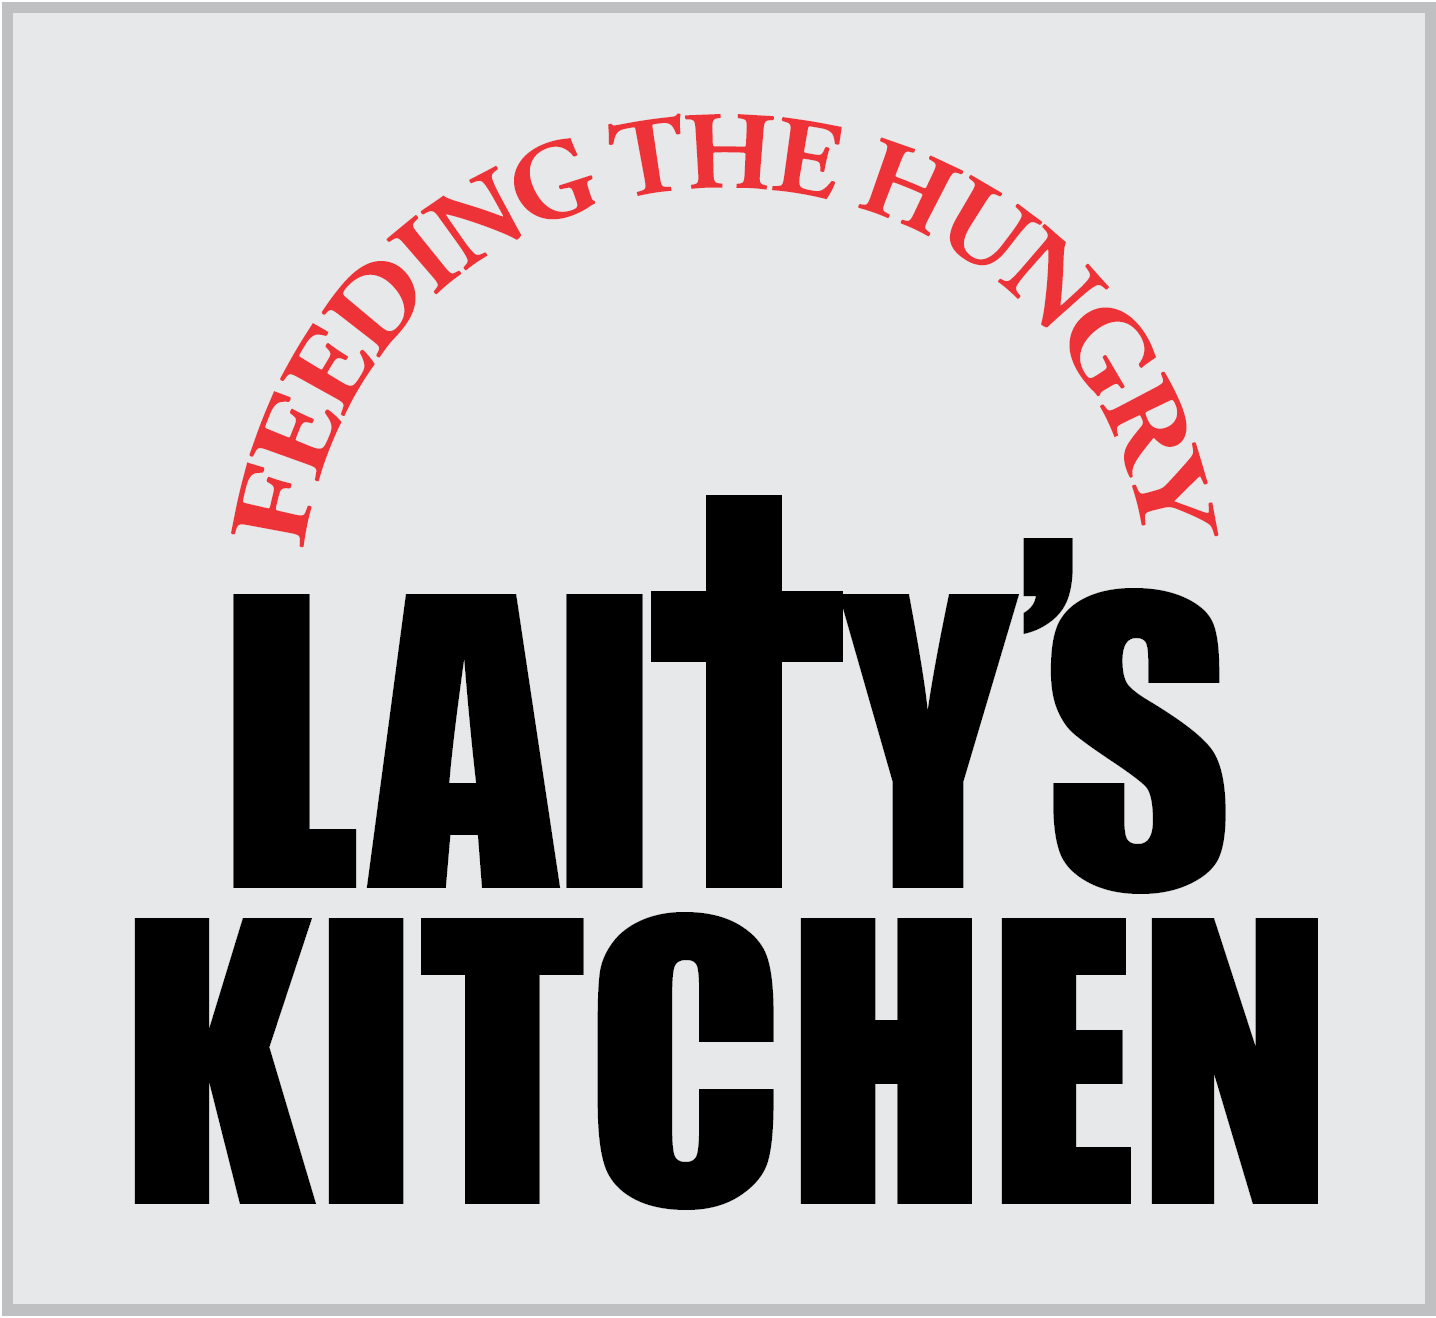 The Laitys Kitchen